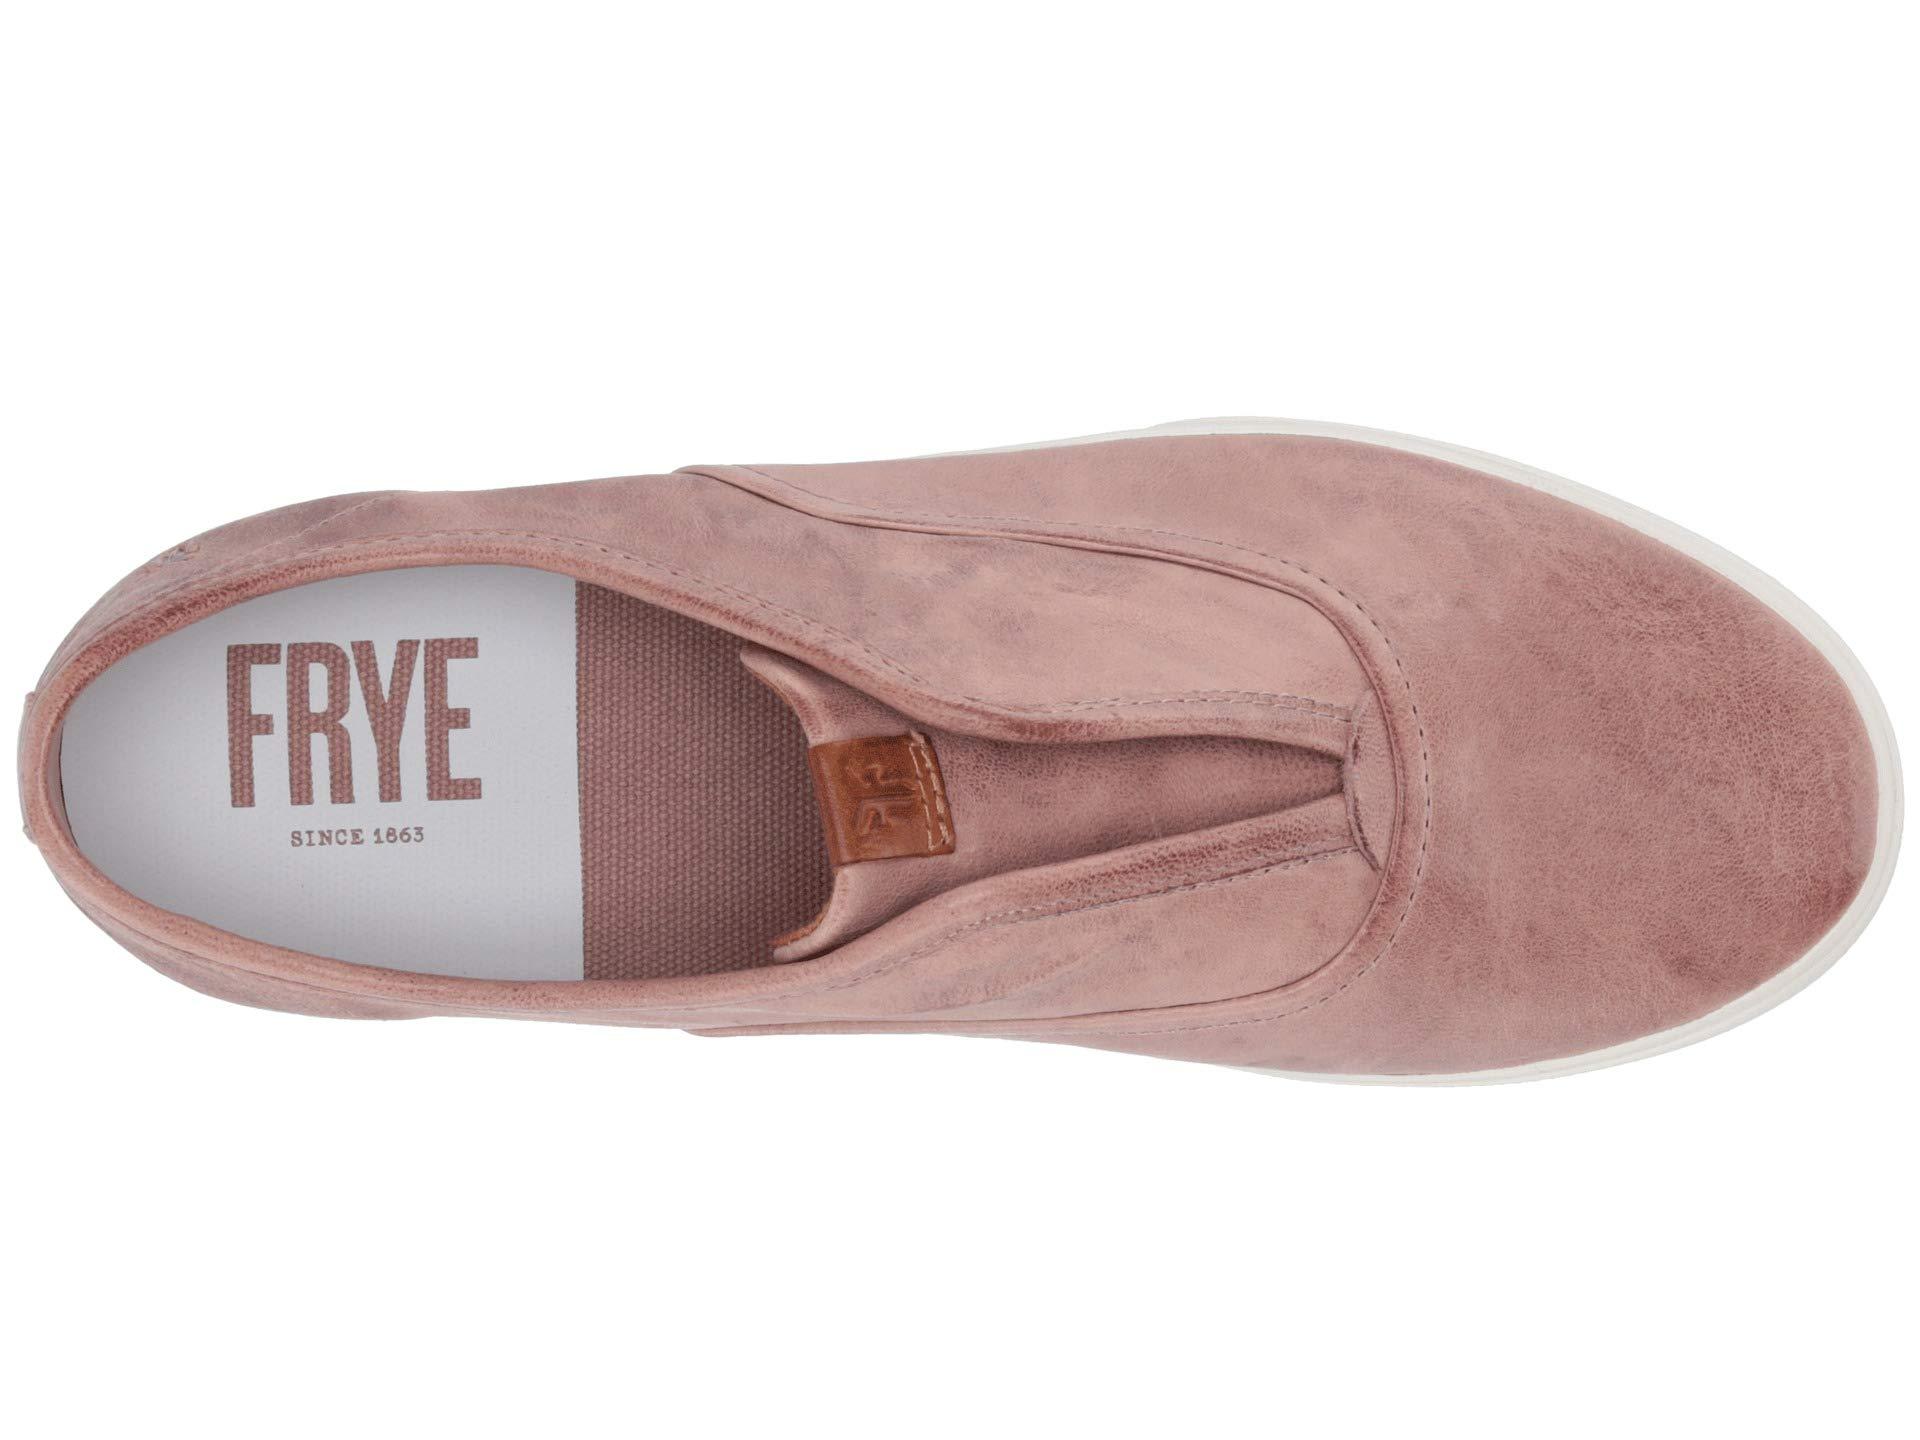 frye women's slip on shoes